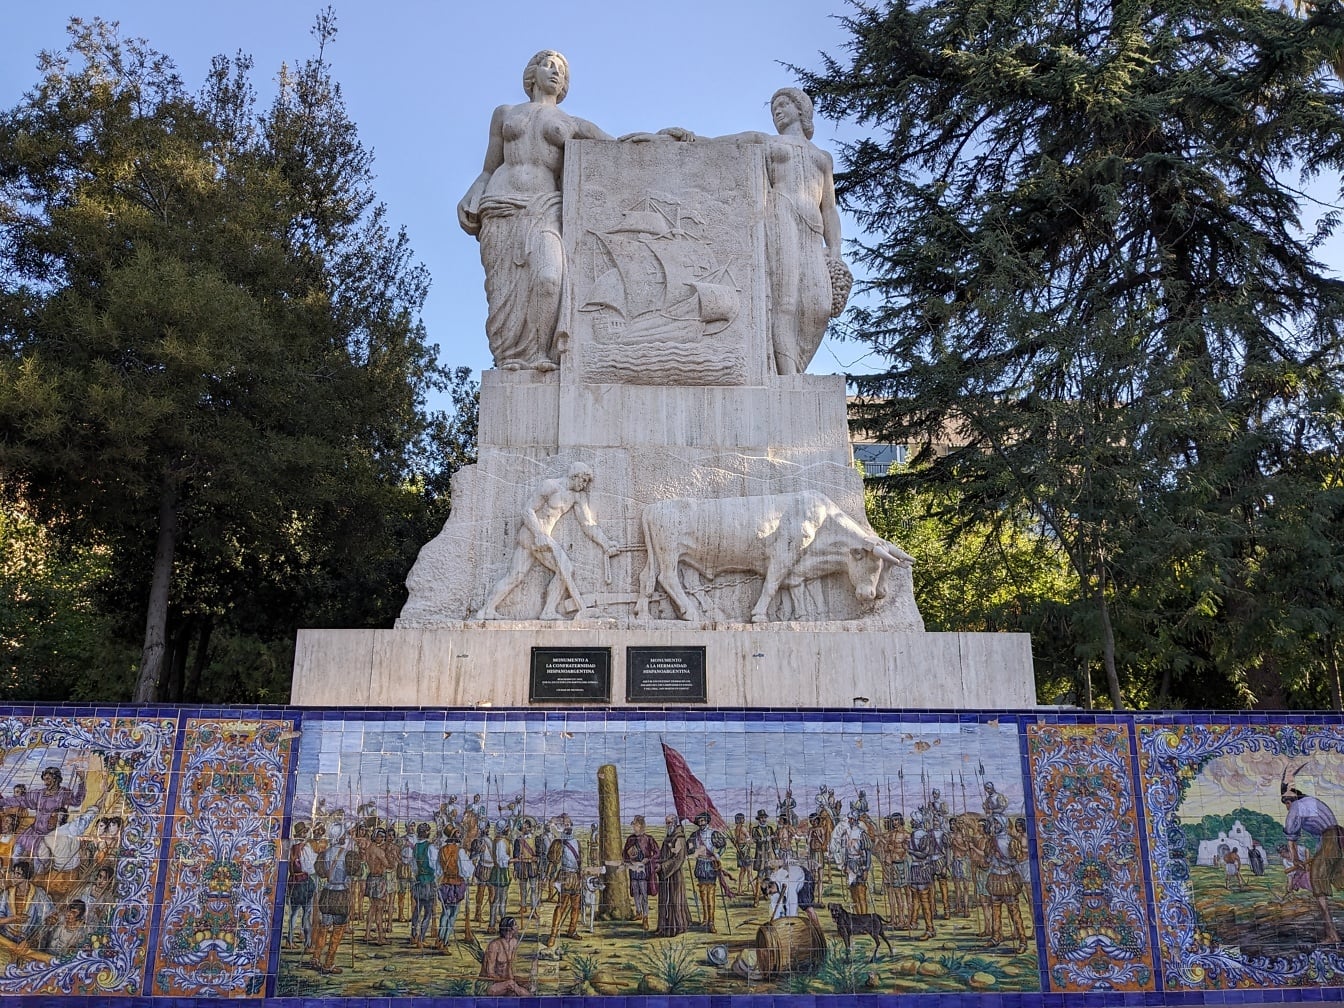 Monumento da fraternidade espanhola pelo escultor Luis Bartolomé Somoza na praça da Espanha na cidade de Mendoza na Argentina